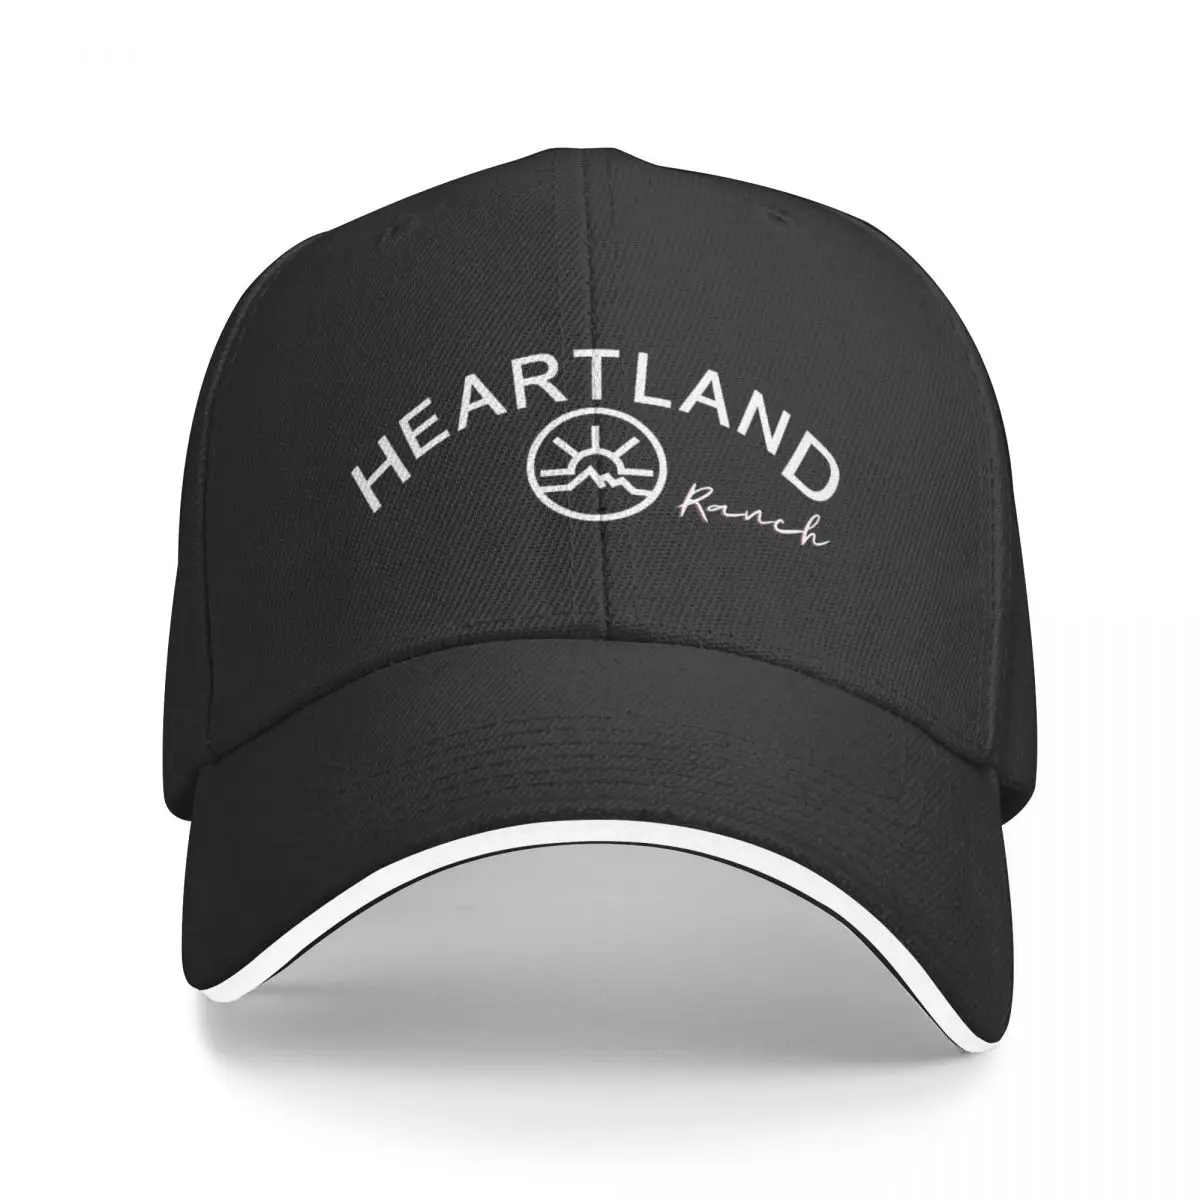 Heartland, бейсболка Heartland Ranch, бейсболка ny cap, роскошная брендовая женская пляжная шляпа, мужская Изображение 1